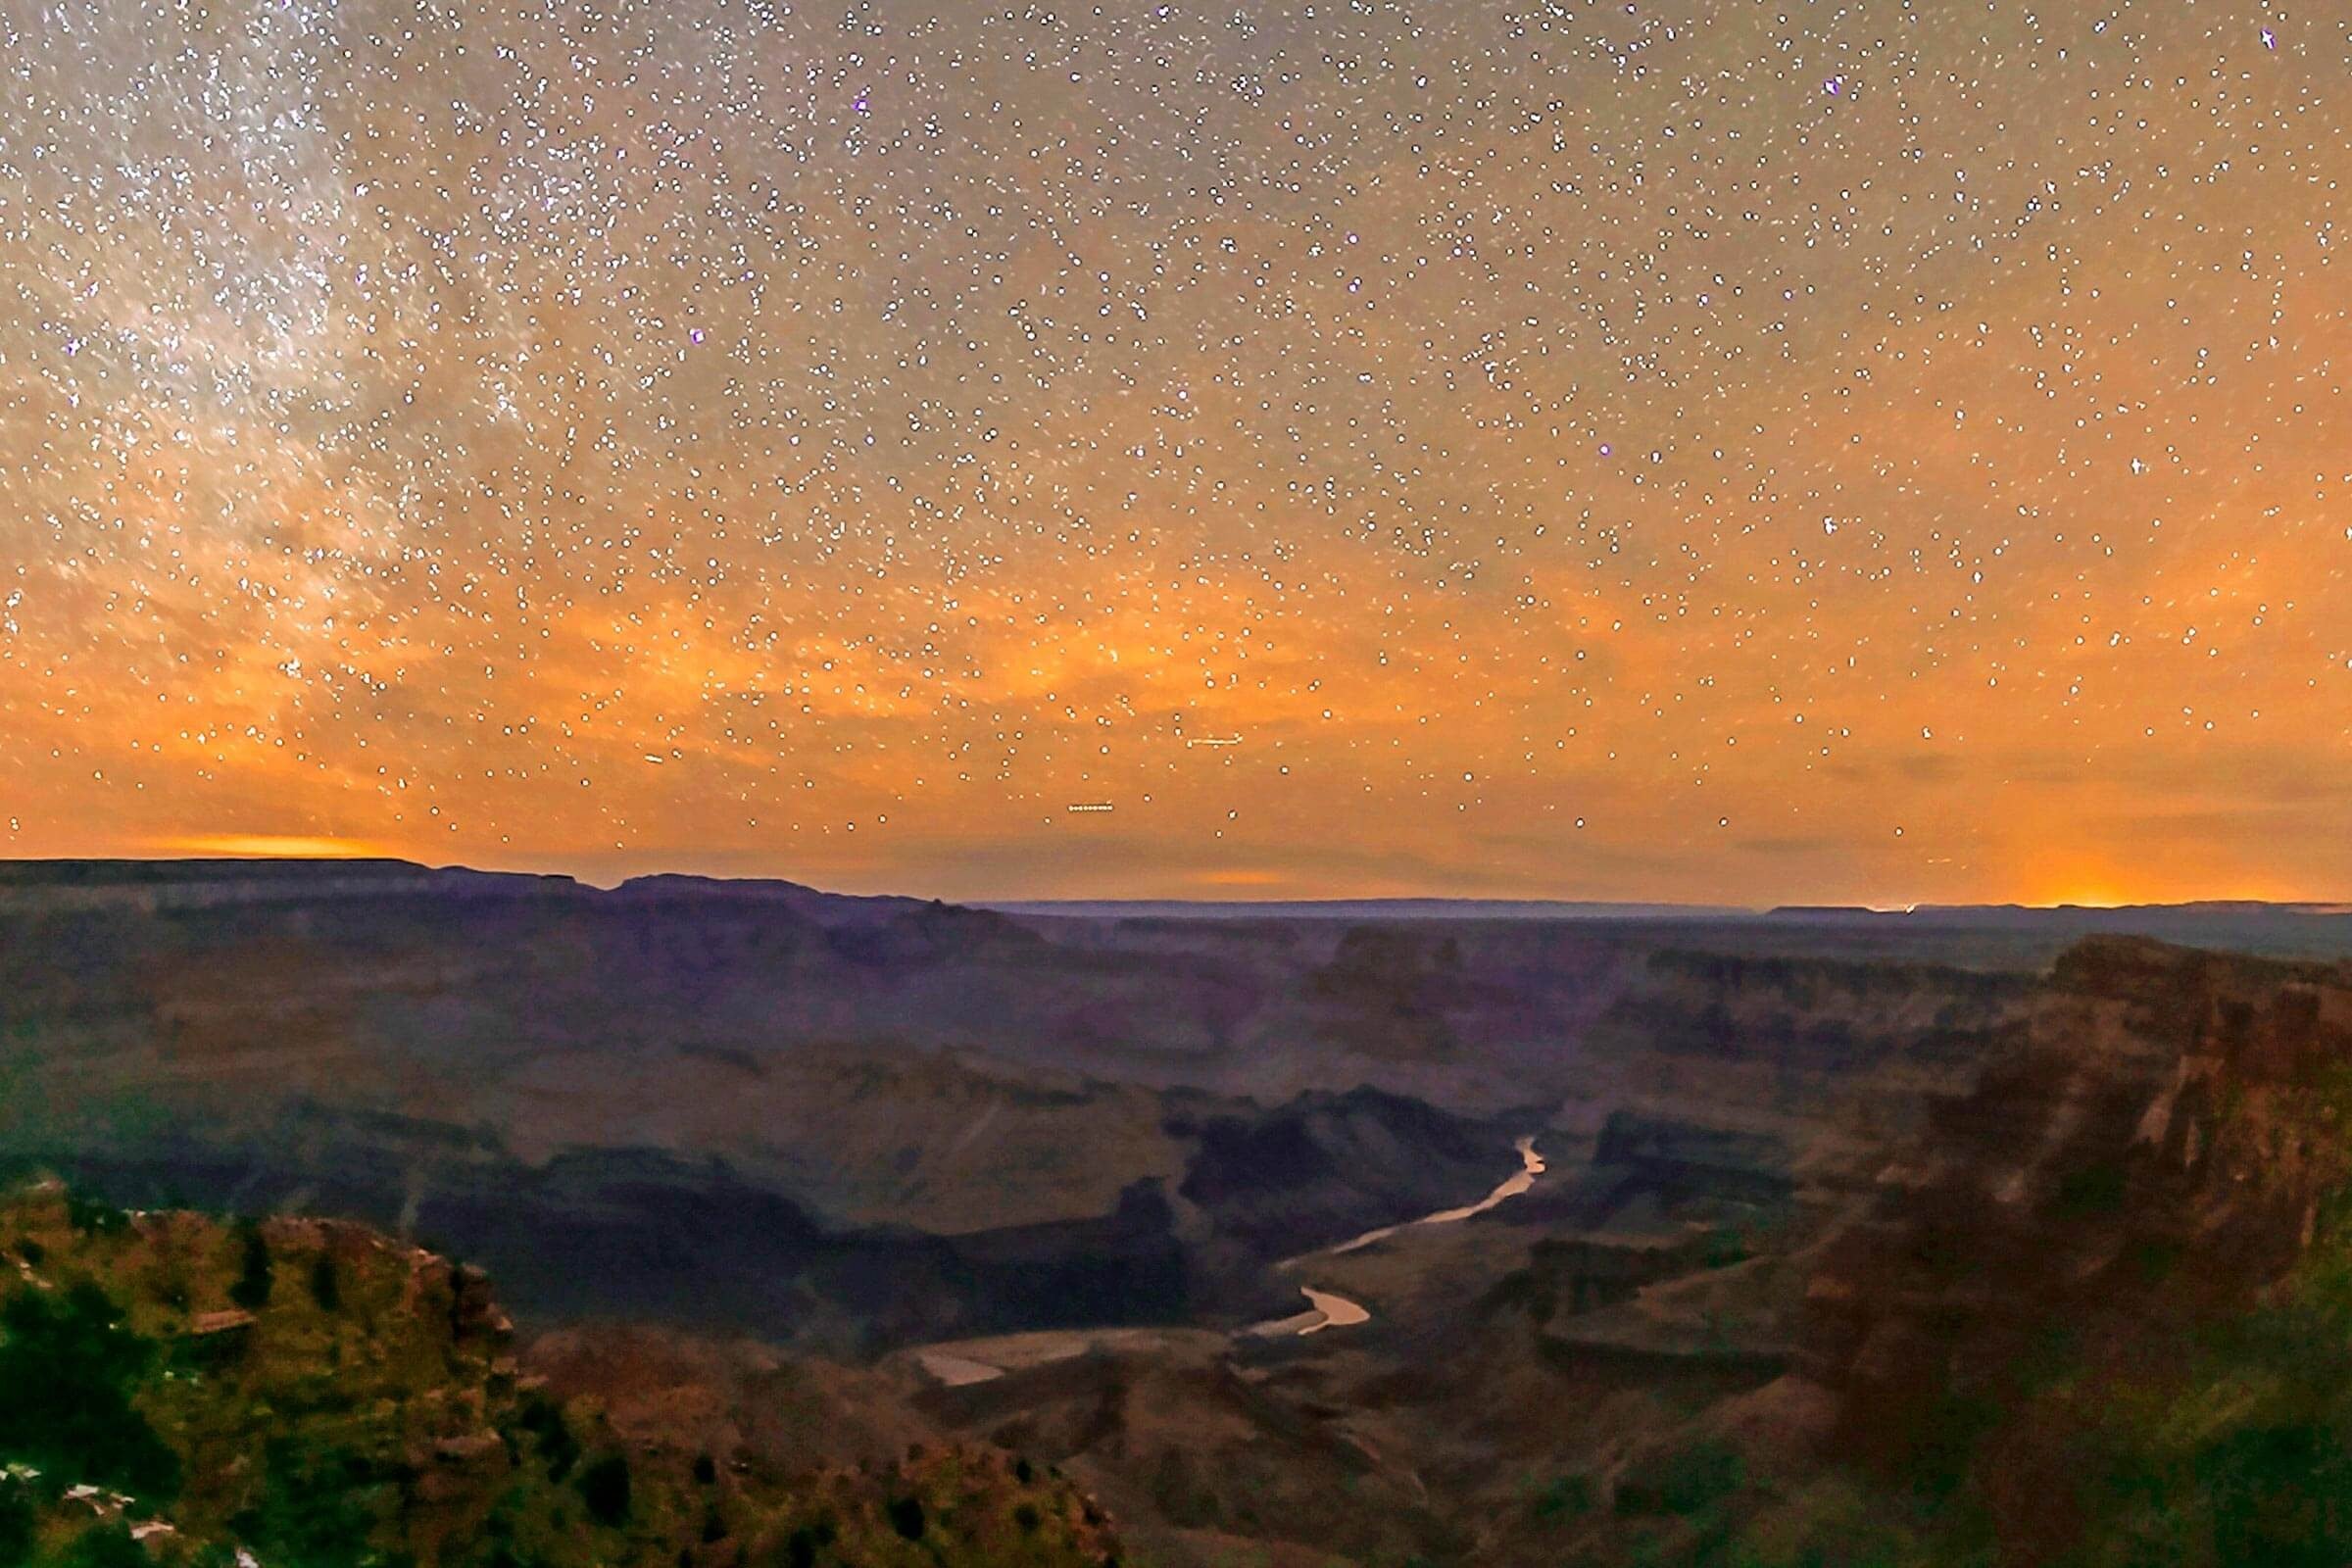 8 parques nacionales espectaculares que son aún más increíbles en las noches estrelladas 